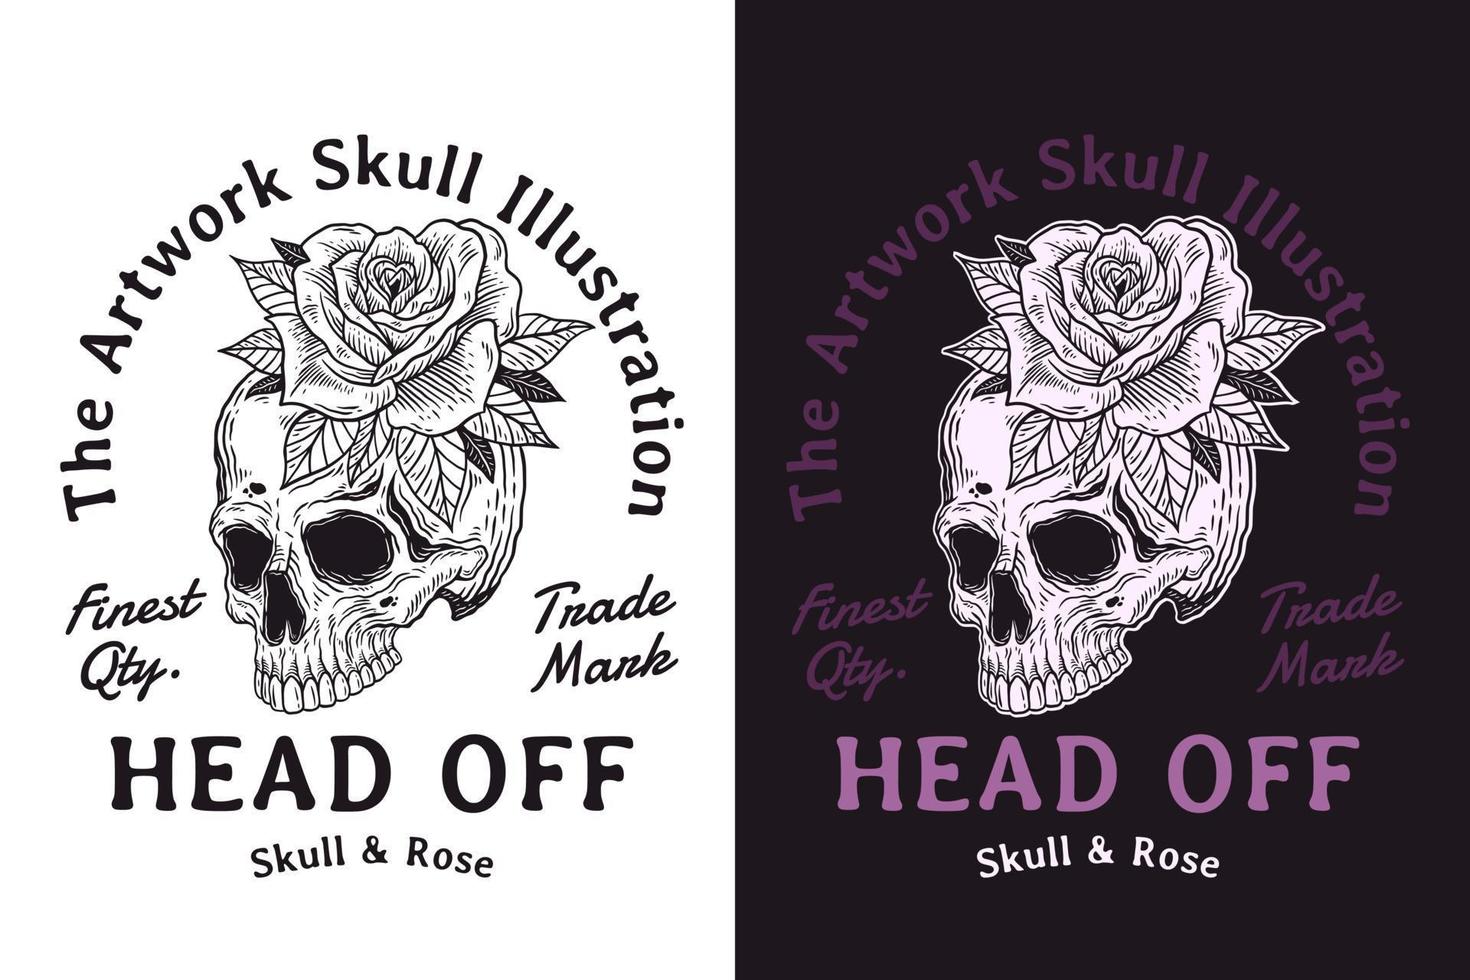 conjunto cráneo rosa oscuro ilustración bestia cráneo huesos cabeza dibujado a mano eclosión contorno símbolo tatuaje mercancías camisetas merchandising vintage vector